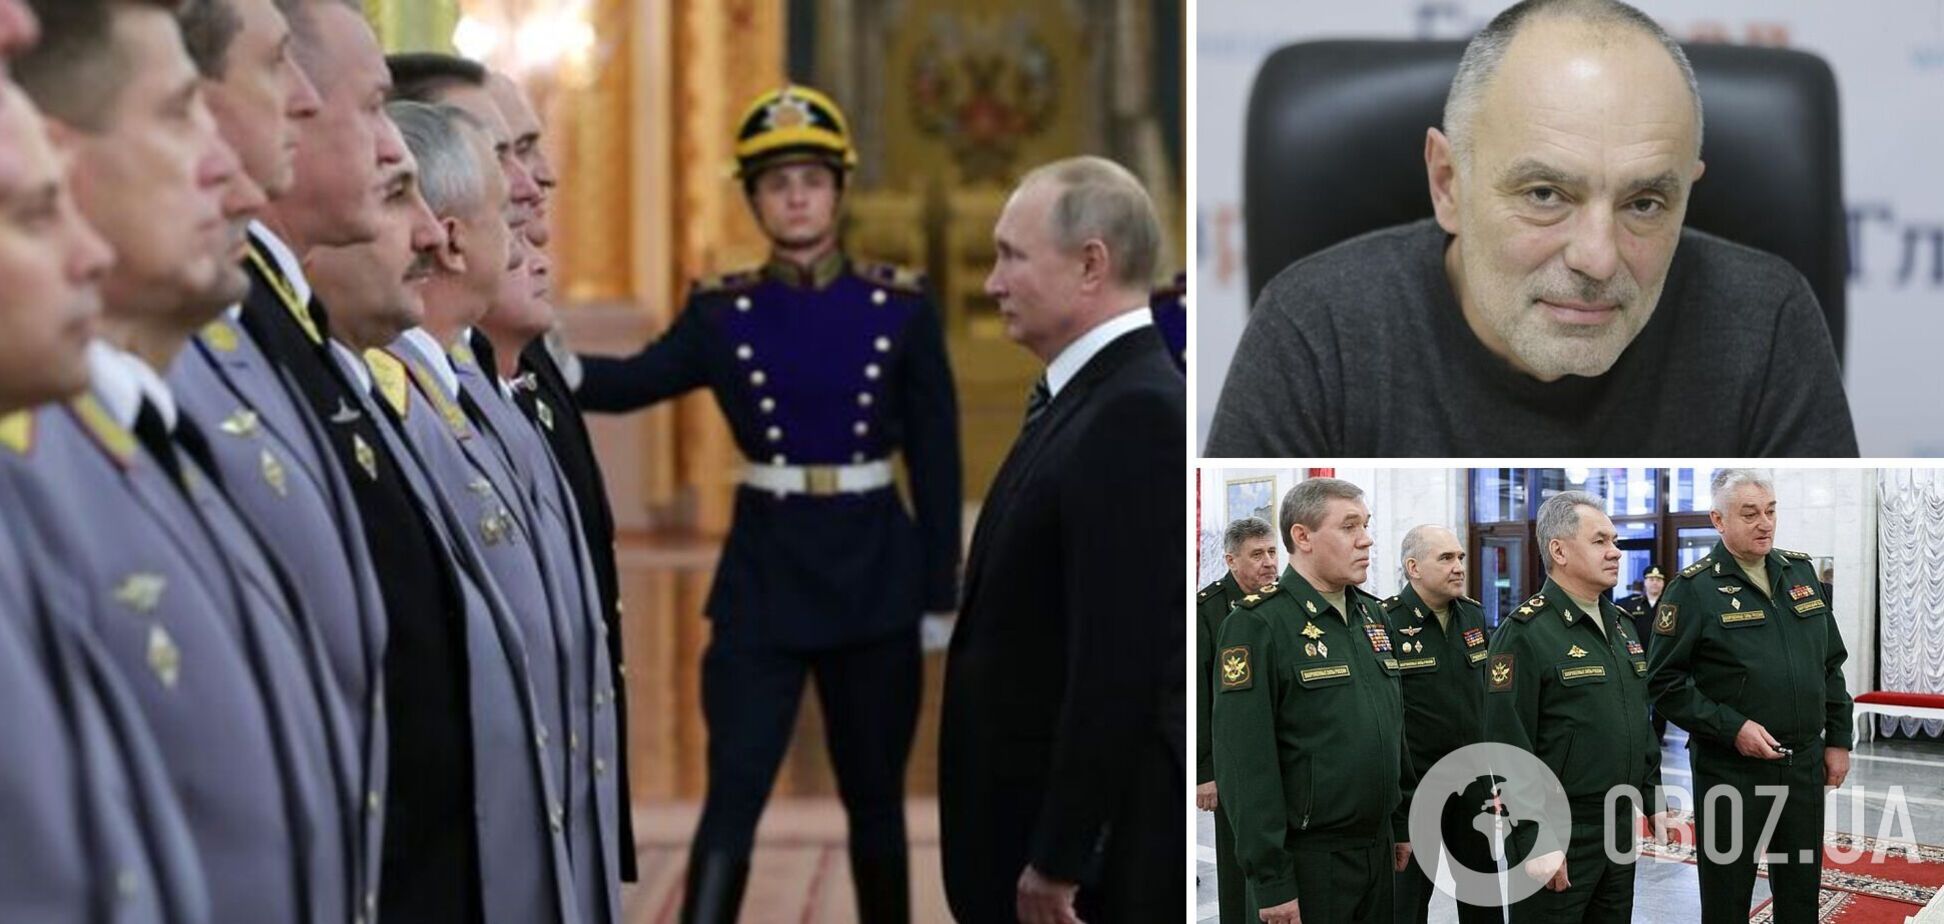 Касьянов: дохлих генералів Путіна буде дедалі більше, поранений Герасимов отримав знак. Інтерв'ю